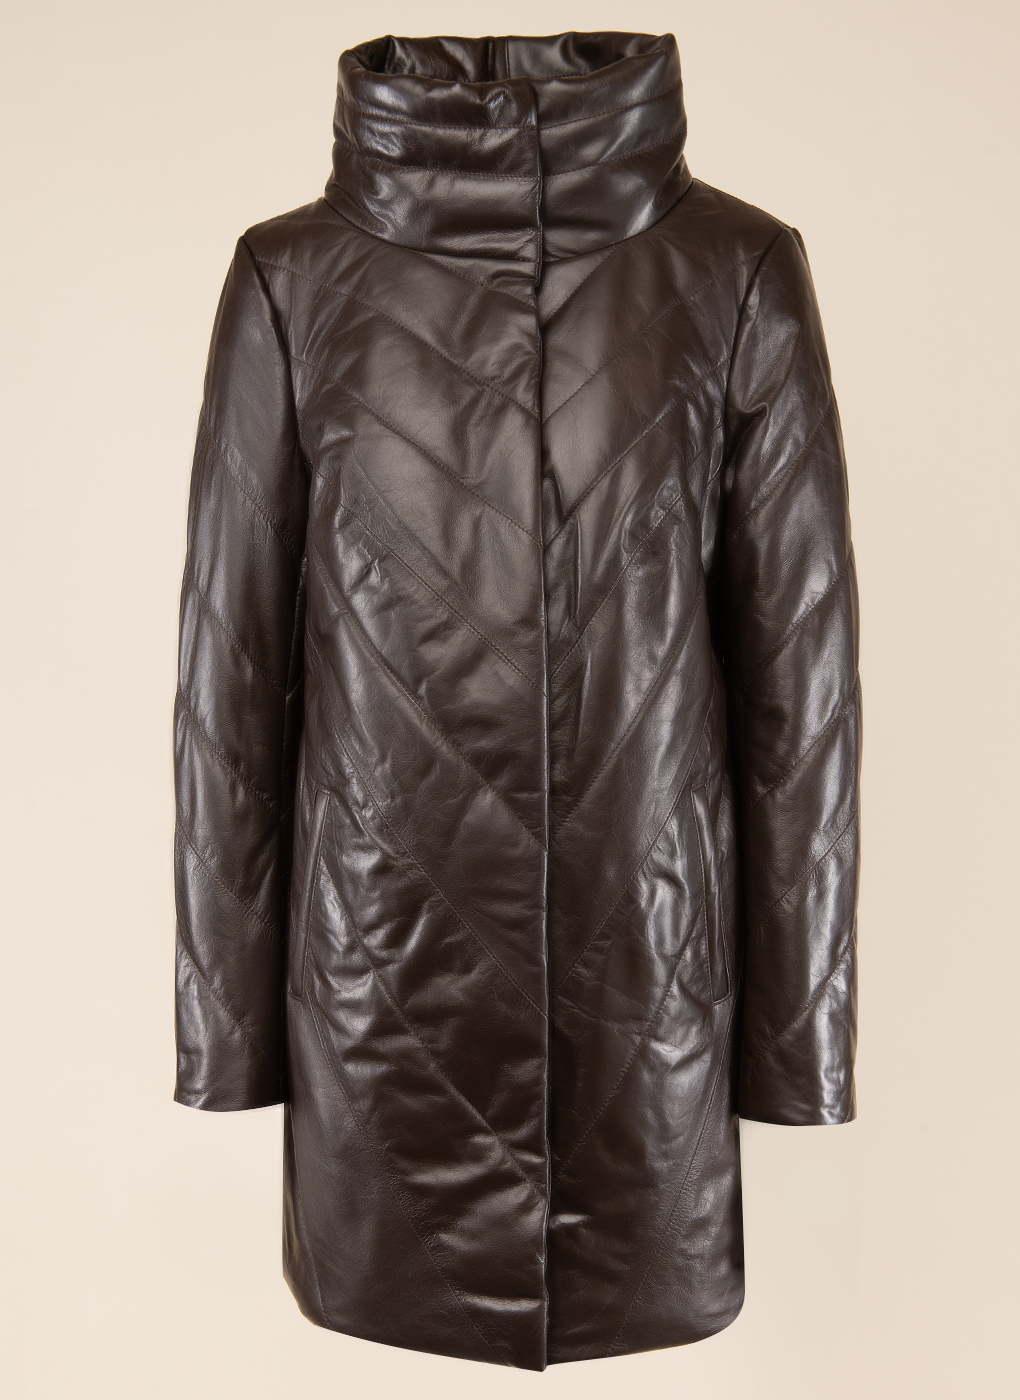 Кожаная куртка женская 1596155 коричневая 48 Каляев. Цвет: коричневый